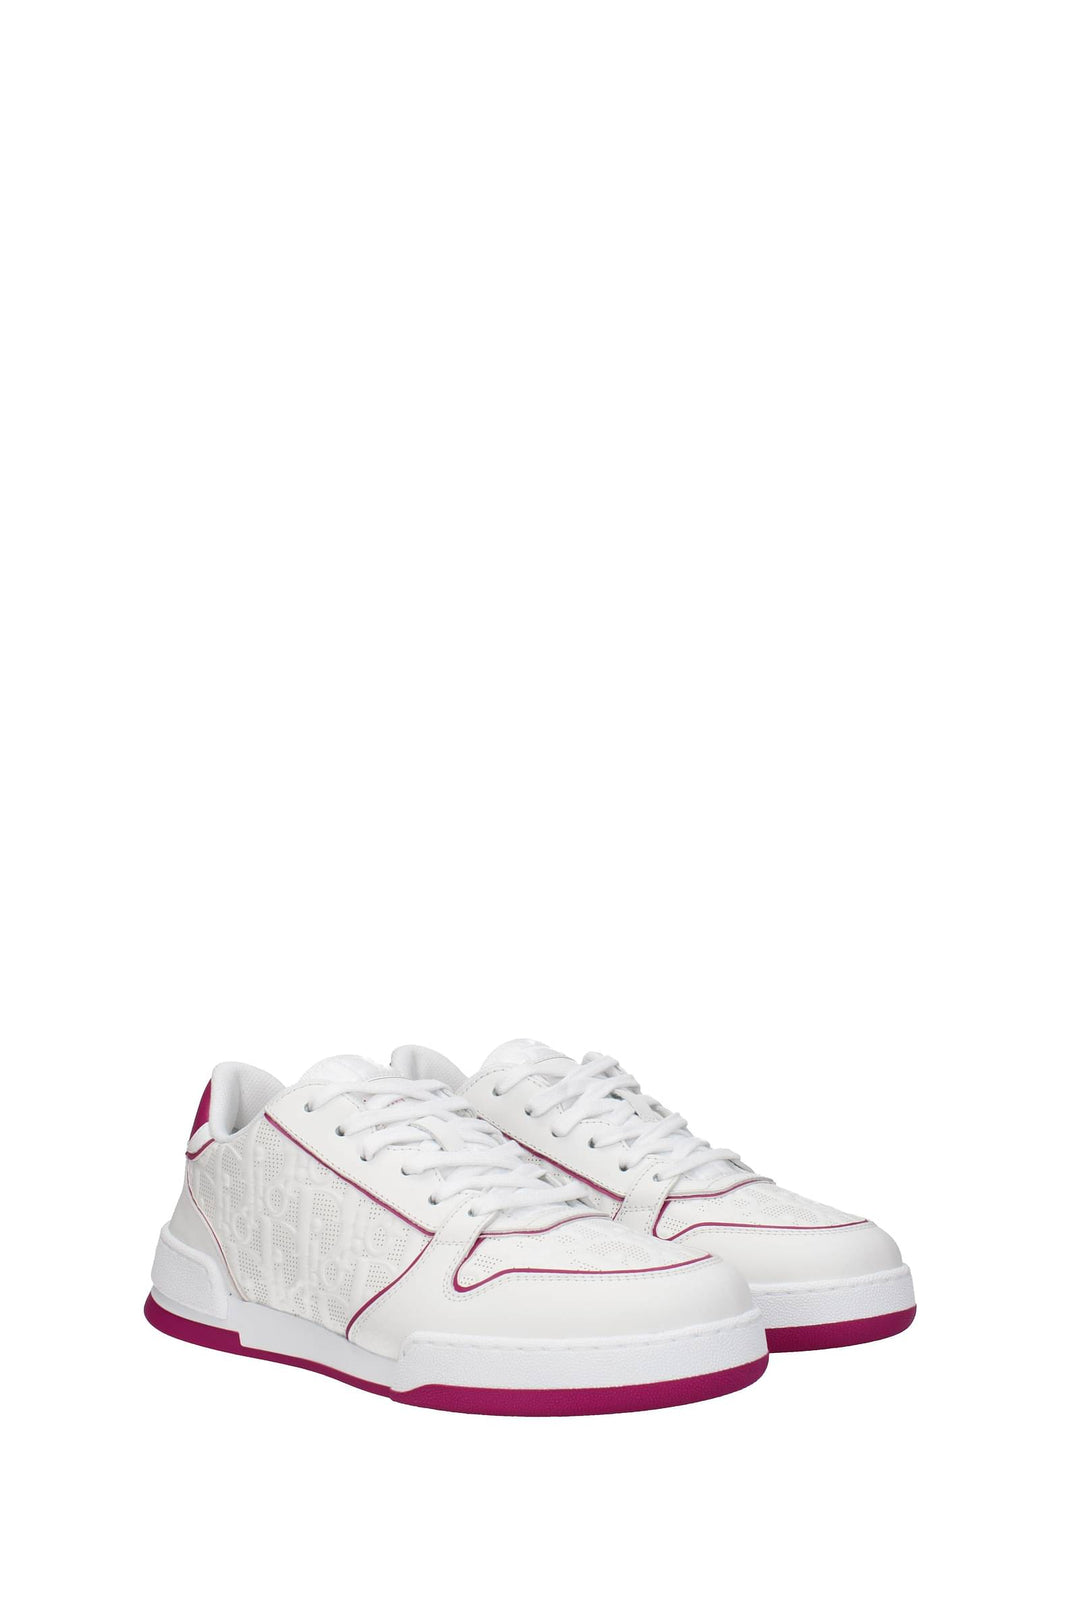 Sneakers Oblique Pelle Bianco Fuxia - Christian Dior - Donna